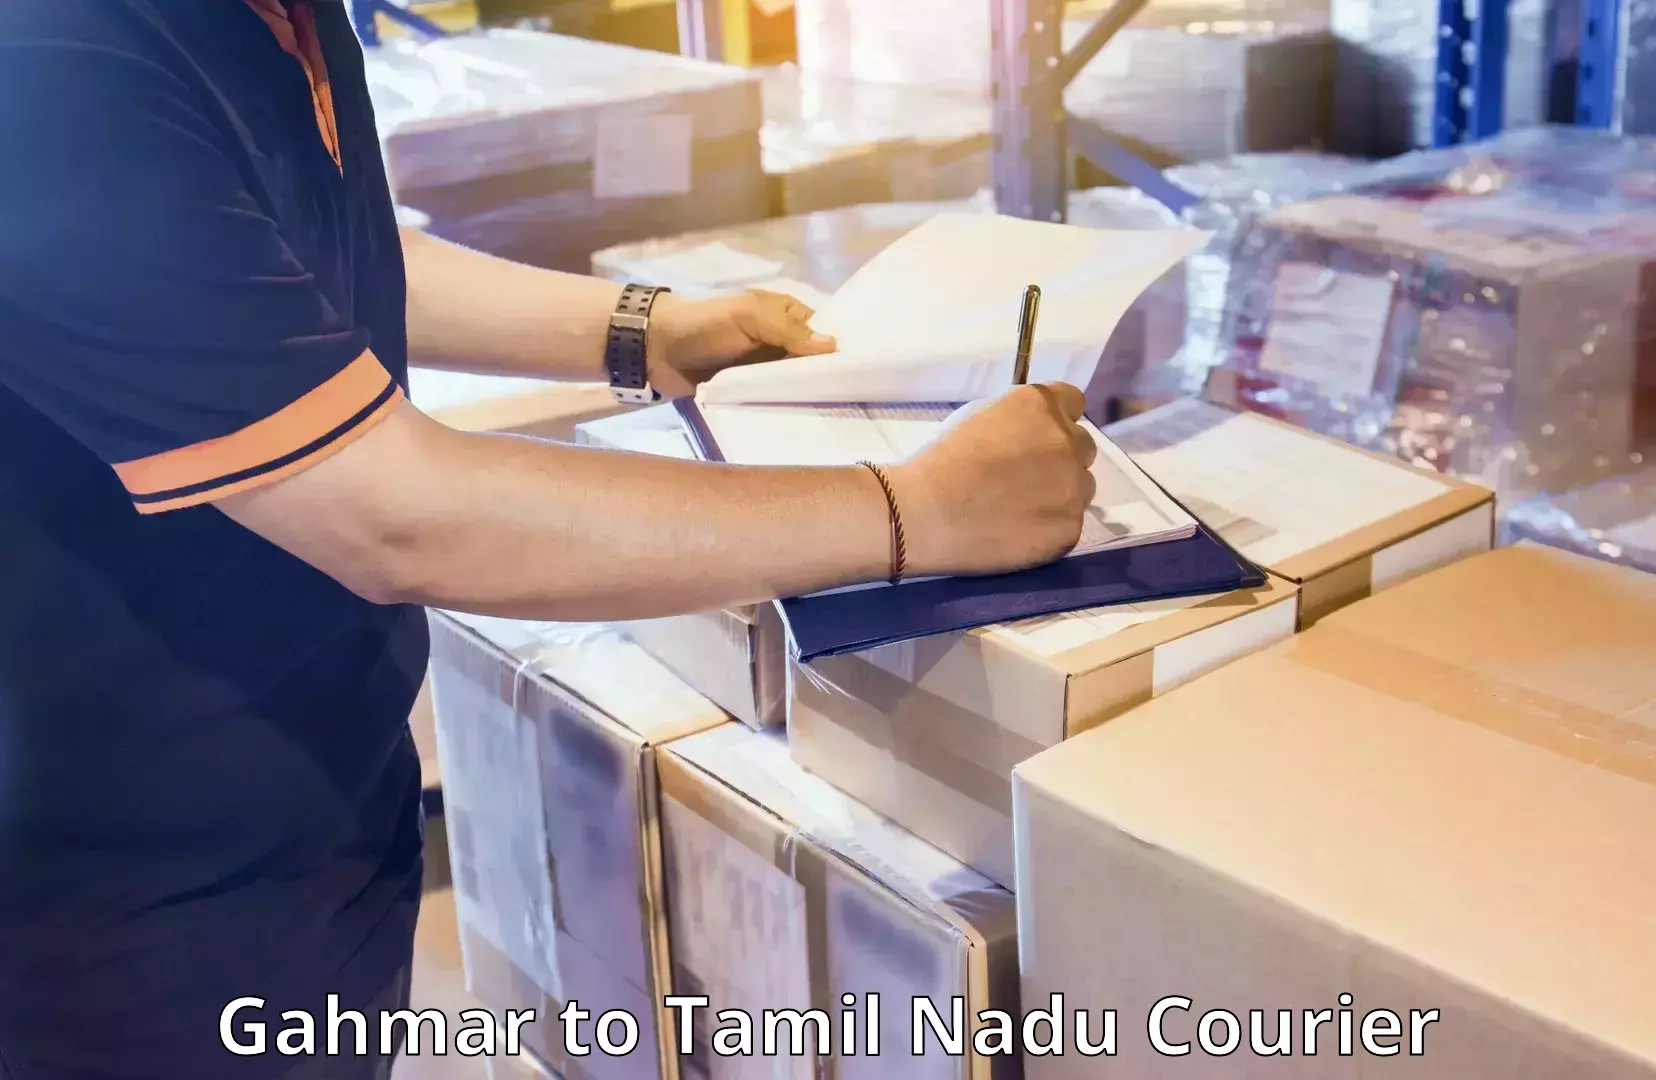 Luggage shipping service Gahmar to Tamil Nadu